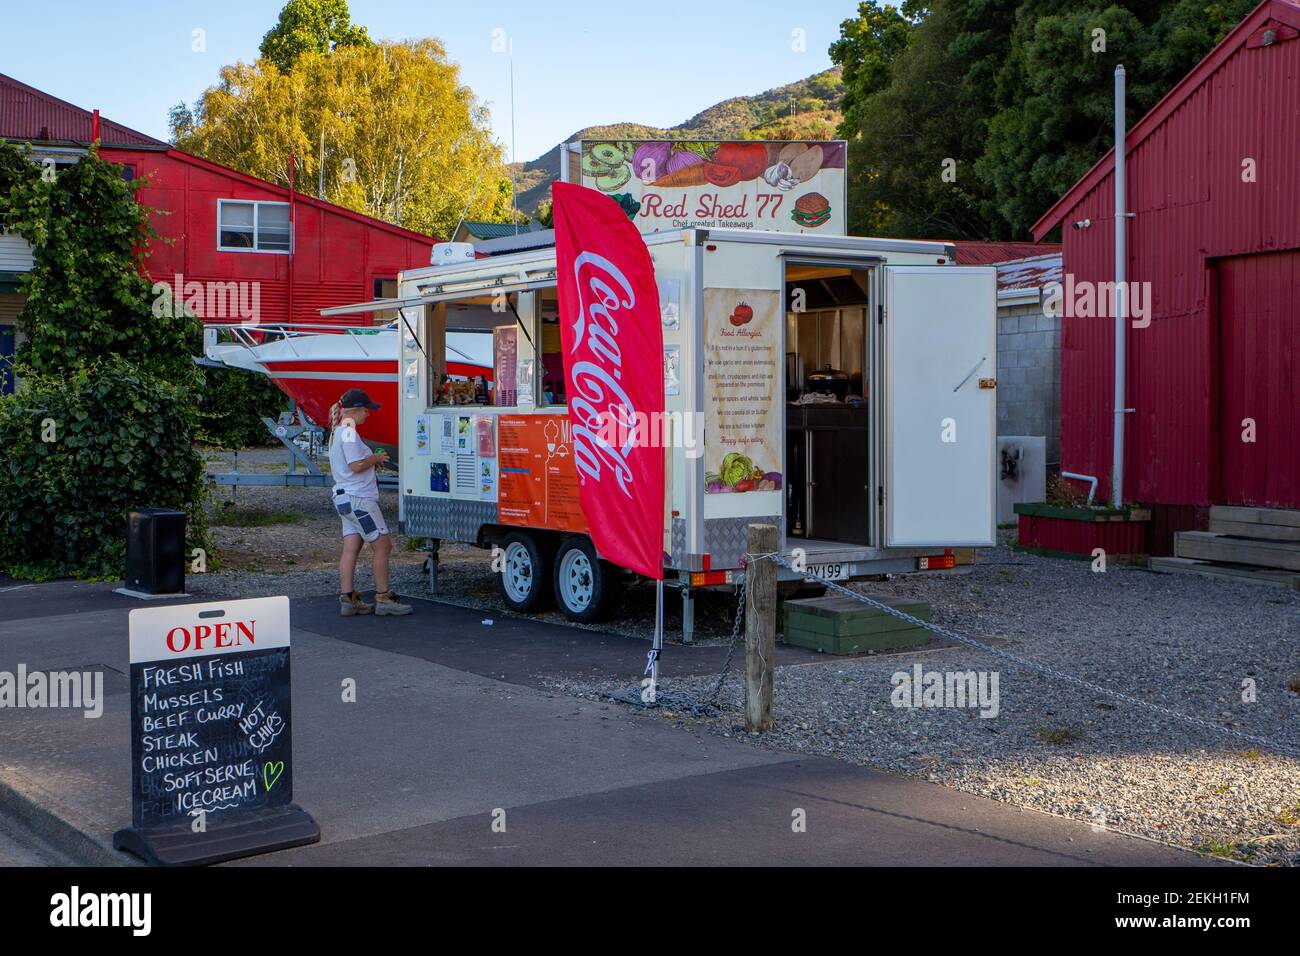 Havelock, Marlborough, Nouvelle-Zélande, février 19 2021: Red Shed 77 - une fourgonnette de restauration vendant du poisson frais, des moules au curry, des boissons, de la crème glacée sur la rue principale Banque D'Images